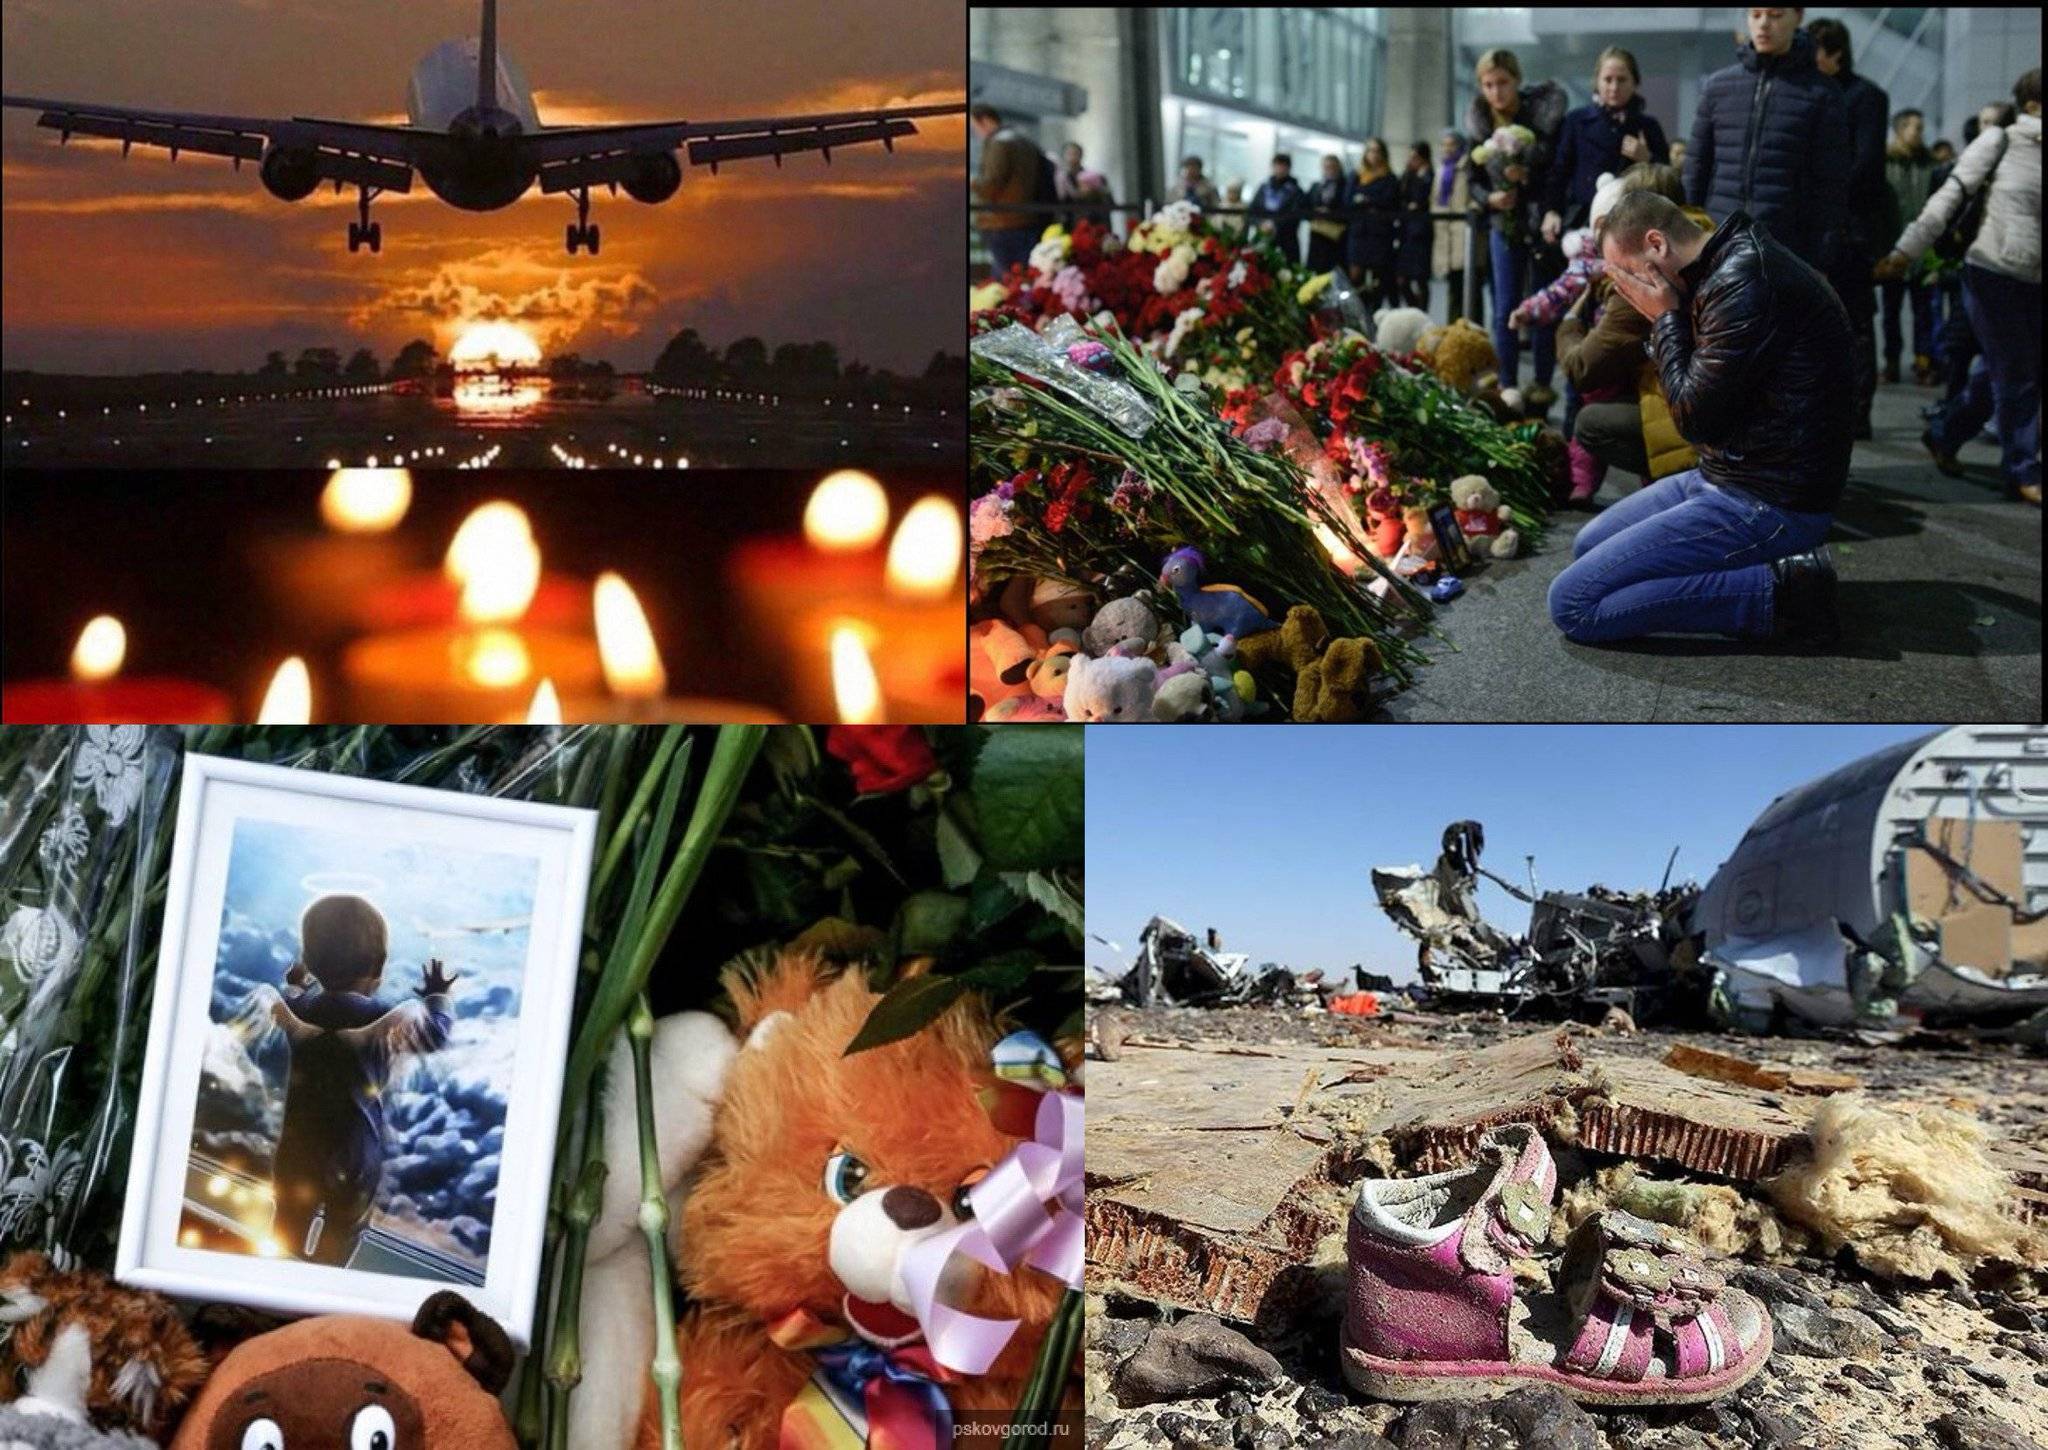 Авиакатастрофа над синаем: все о трагедии